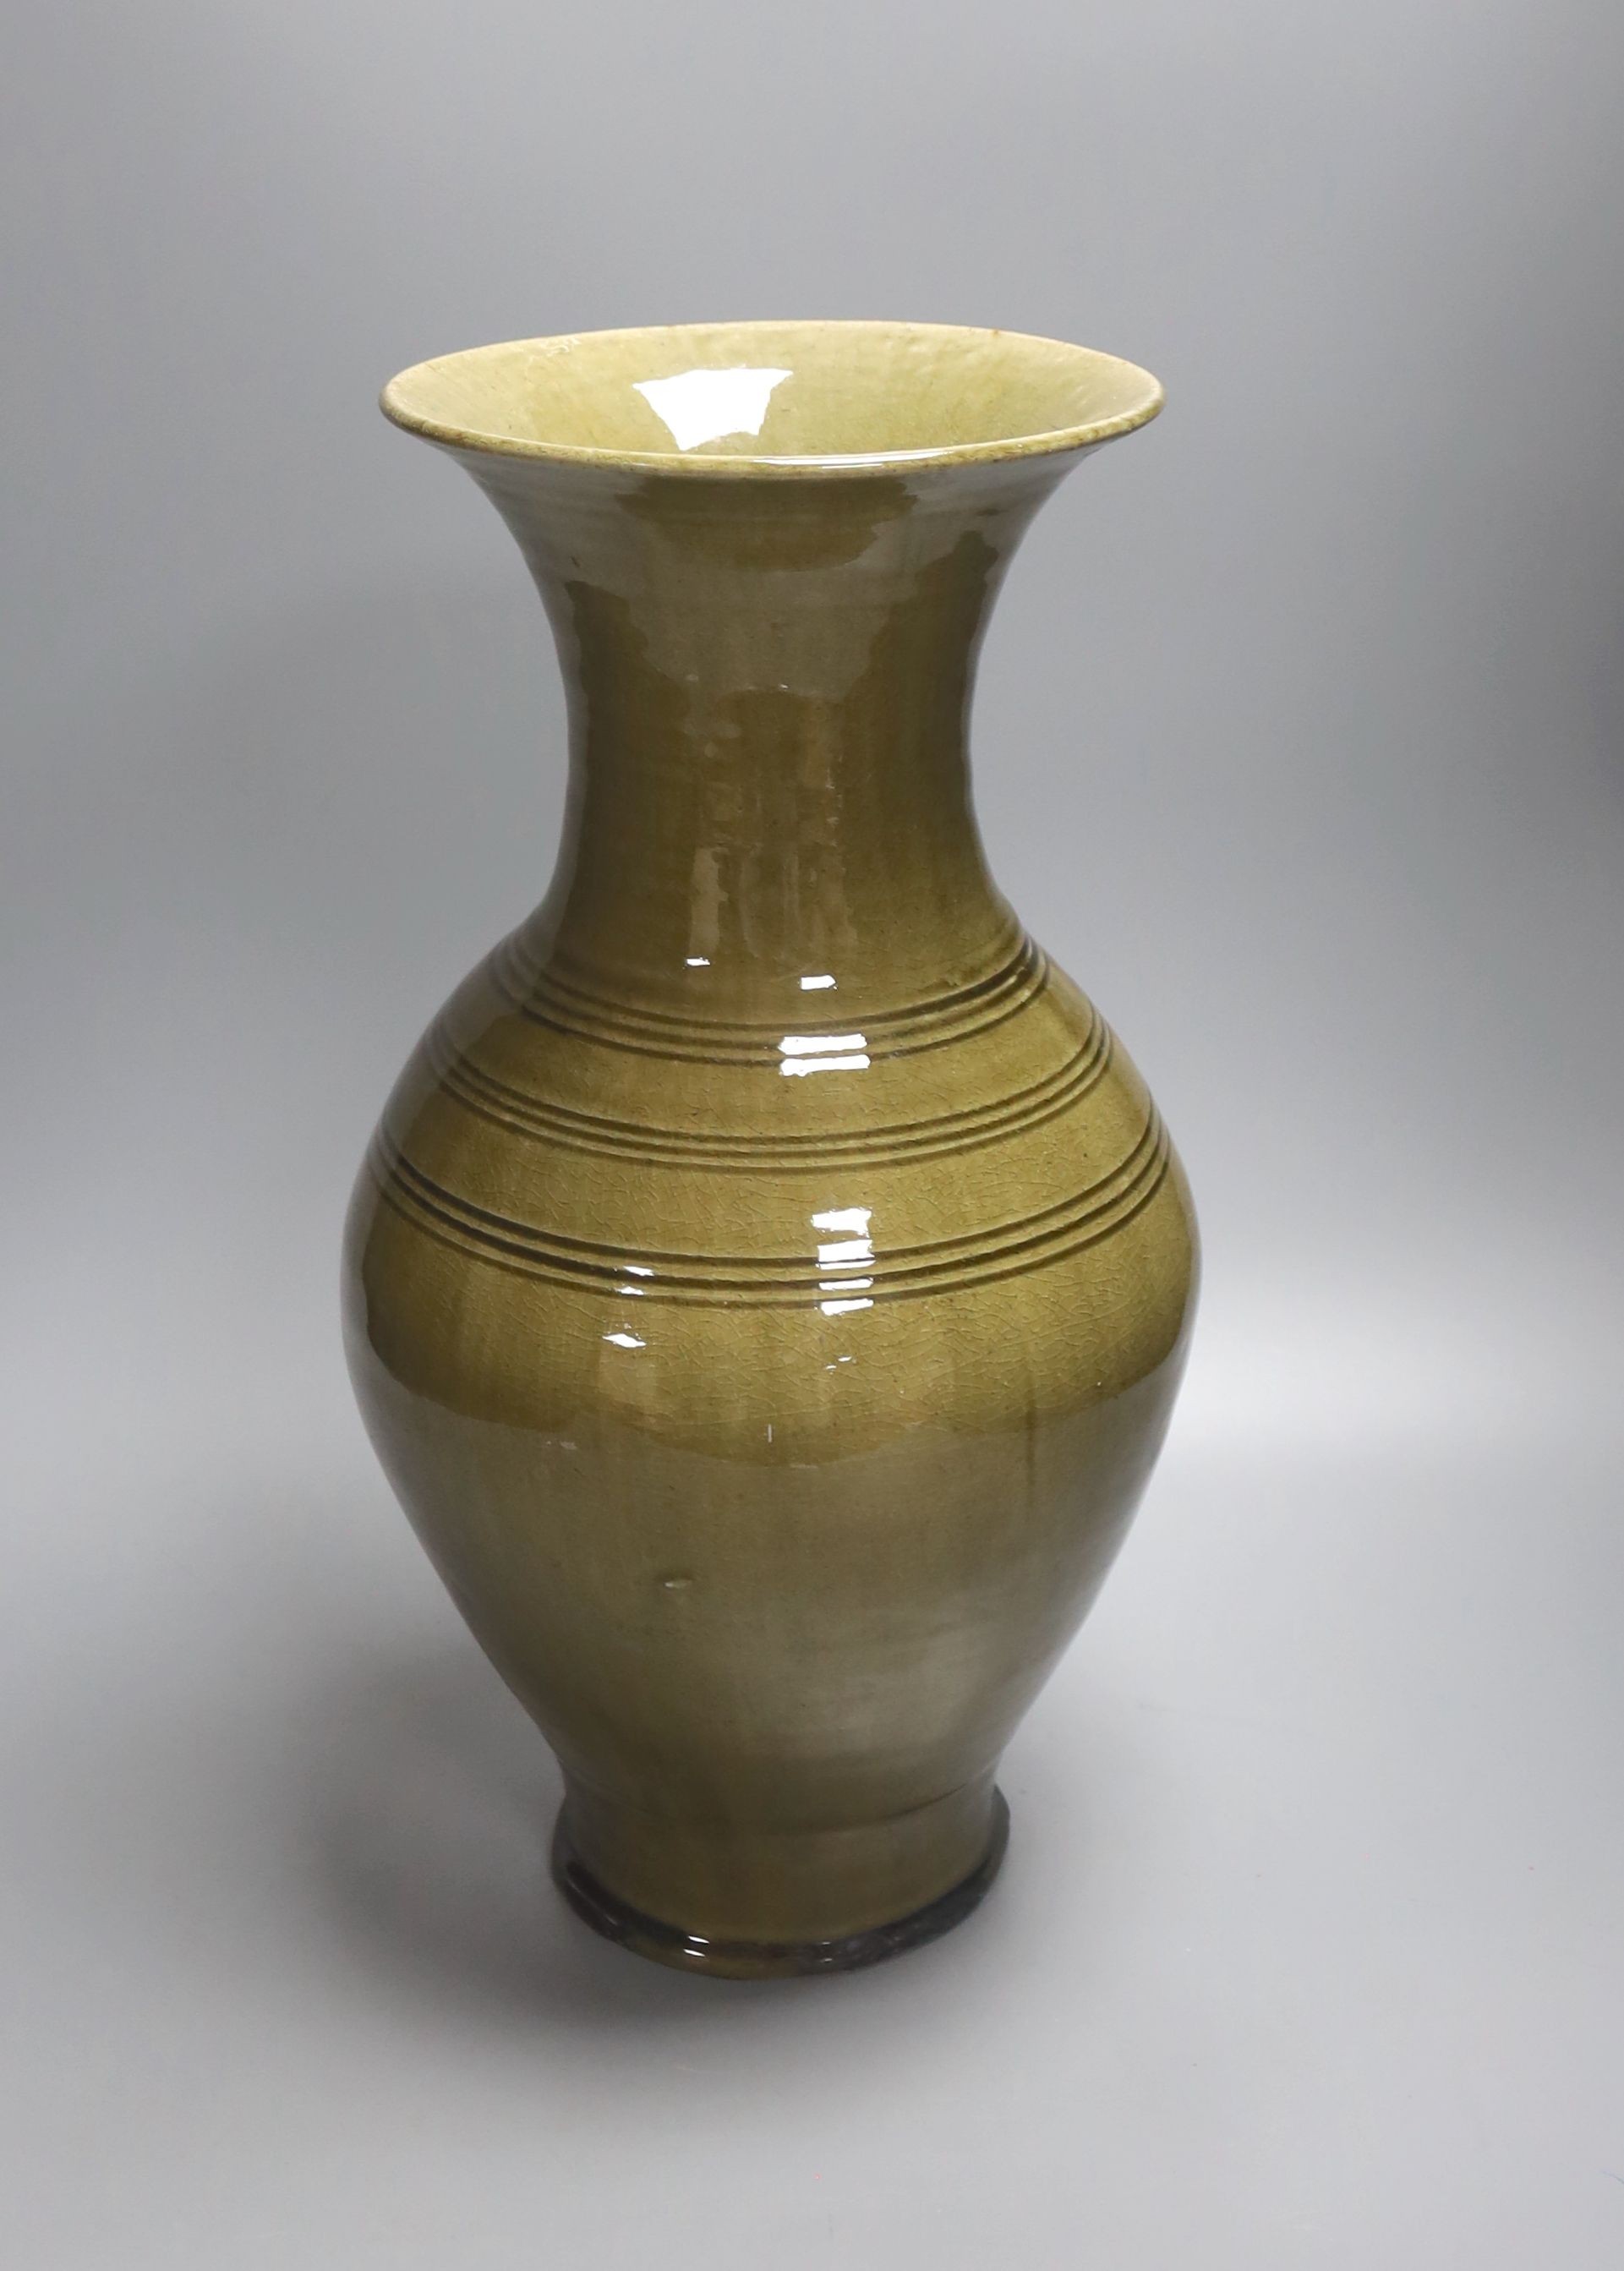 A large Chinese olive green glazed stoneware vase 40cm